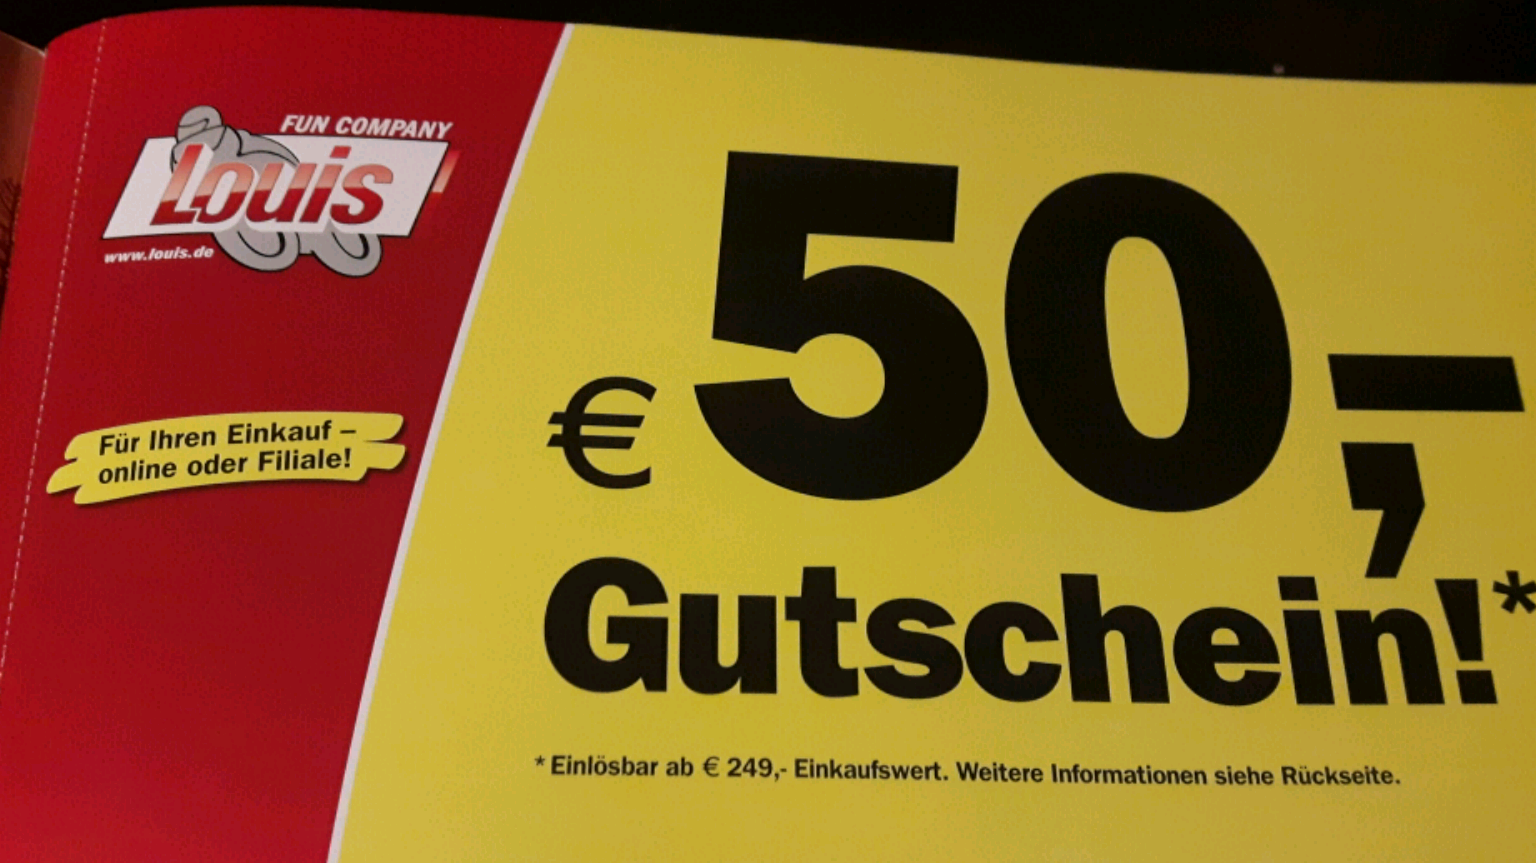 Louis Gutschein » 50€ Rabatt, Februar 2017 - www.lvbagssale.com